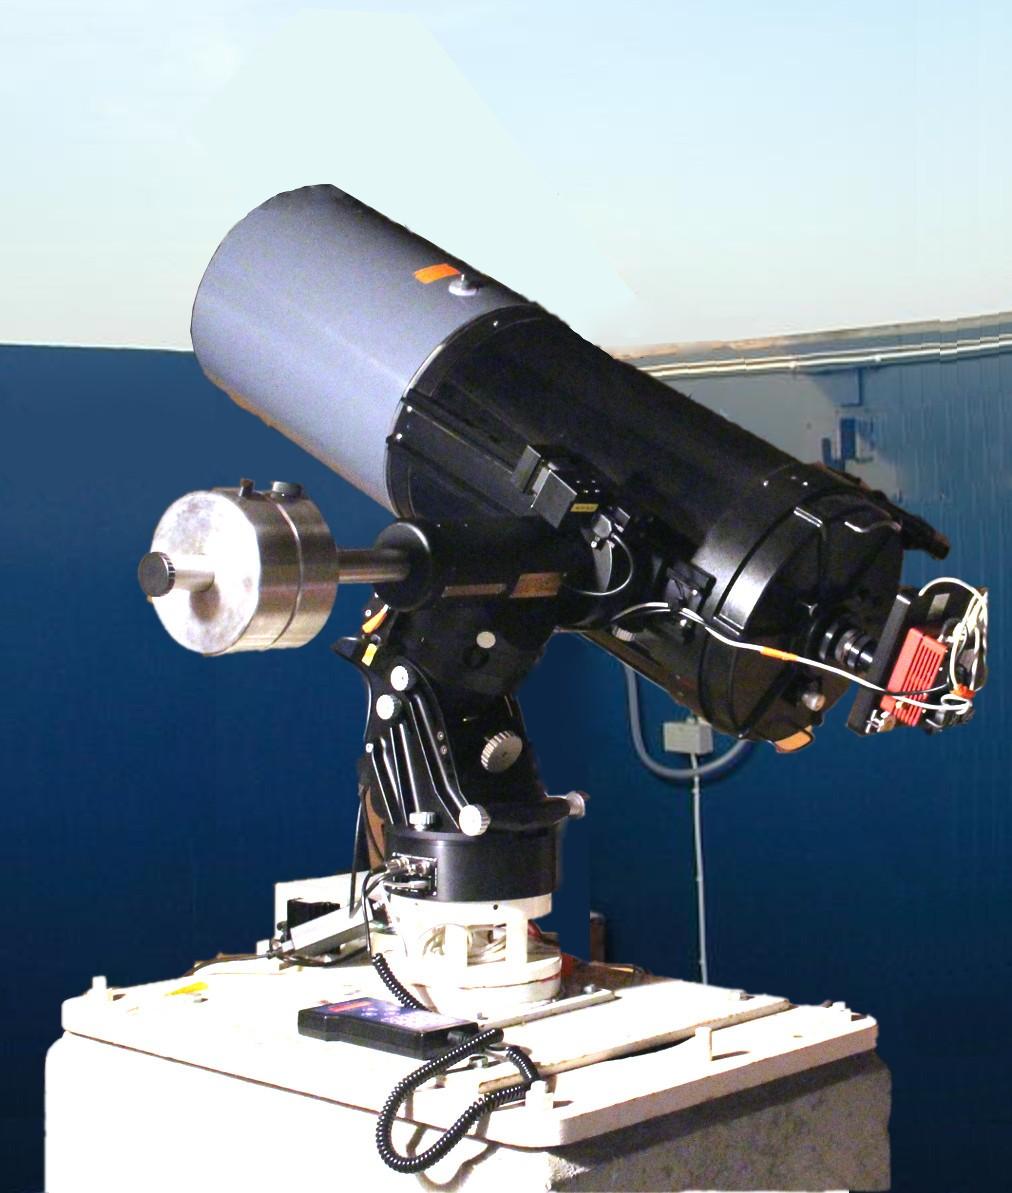 observatoriet, som vid behov kan hjälpa till och ge tips. Teleskopet och dess hyperkänsliga kamera är optimerat för studier av vad man brukar kalla för djuprymdsobjekt.